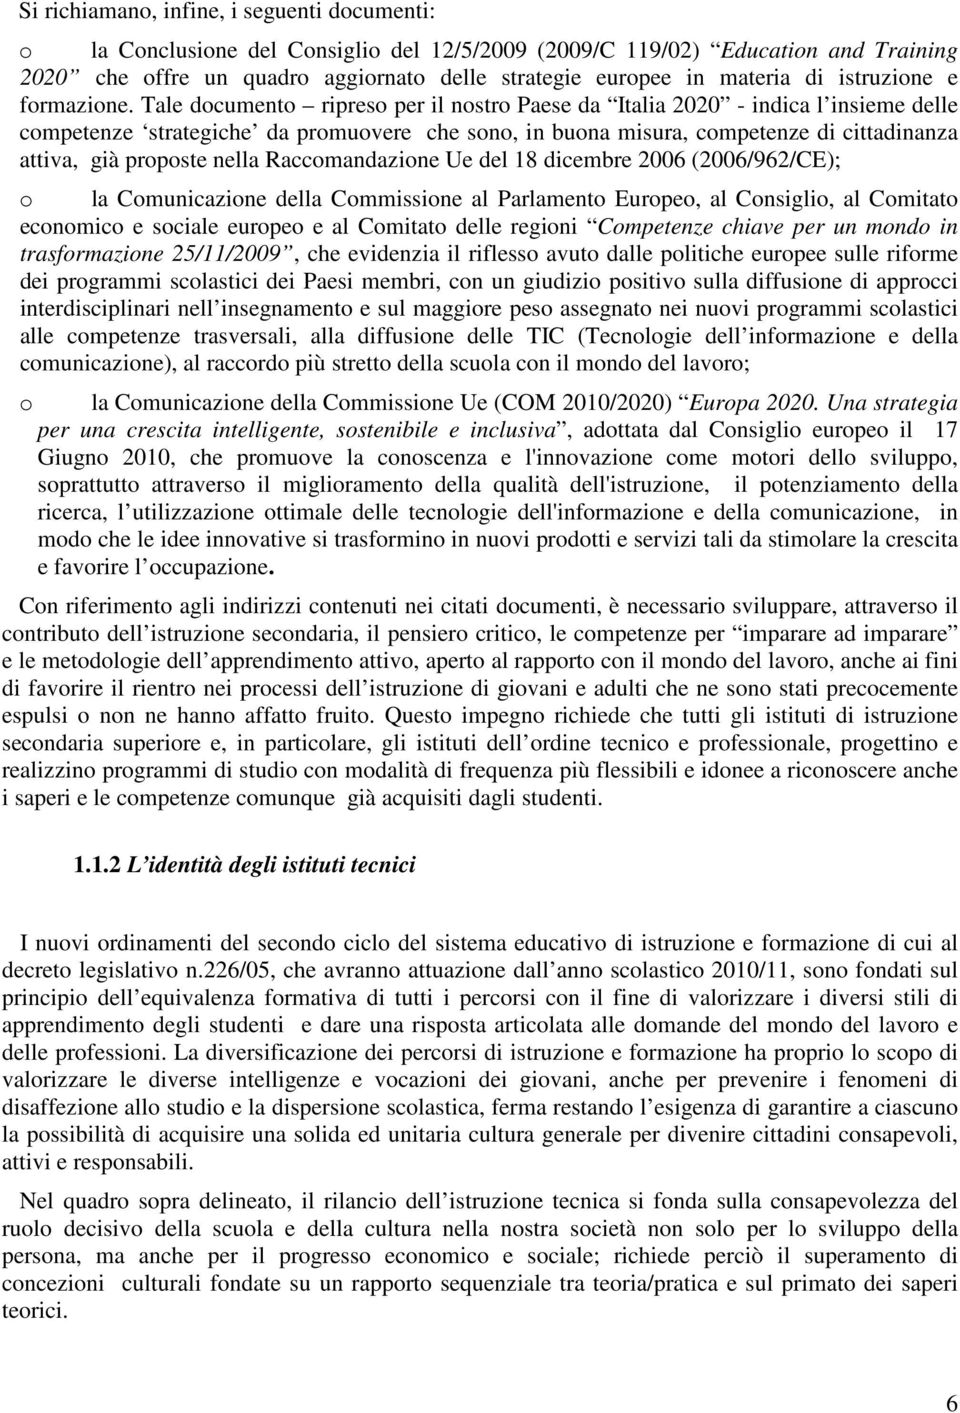 Tale documento ripreso per il nostro Paese da Italia 2020 - indica l insieme delle competenze strategiche da promuovere che sono, in buona misura, competenze di cittadinanza attiva, già proposte